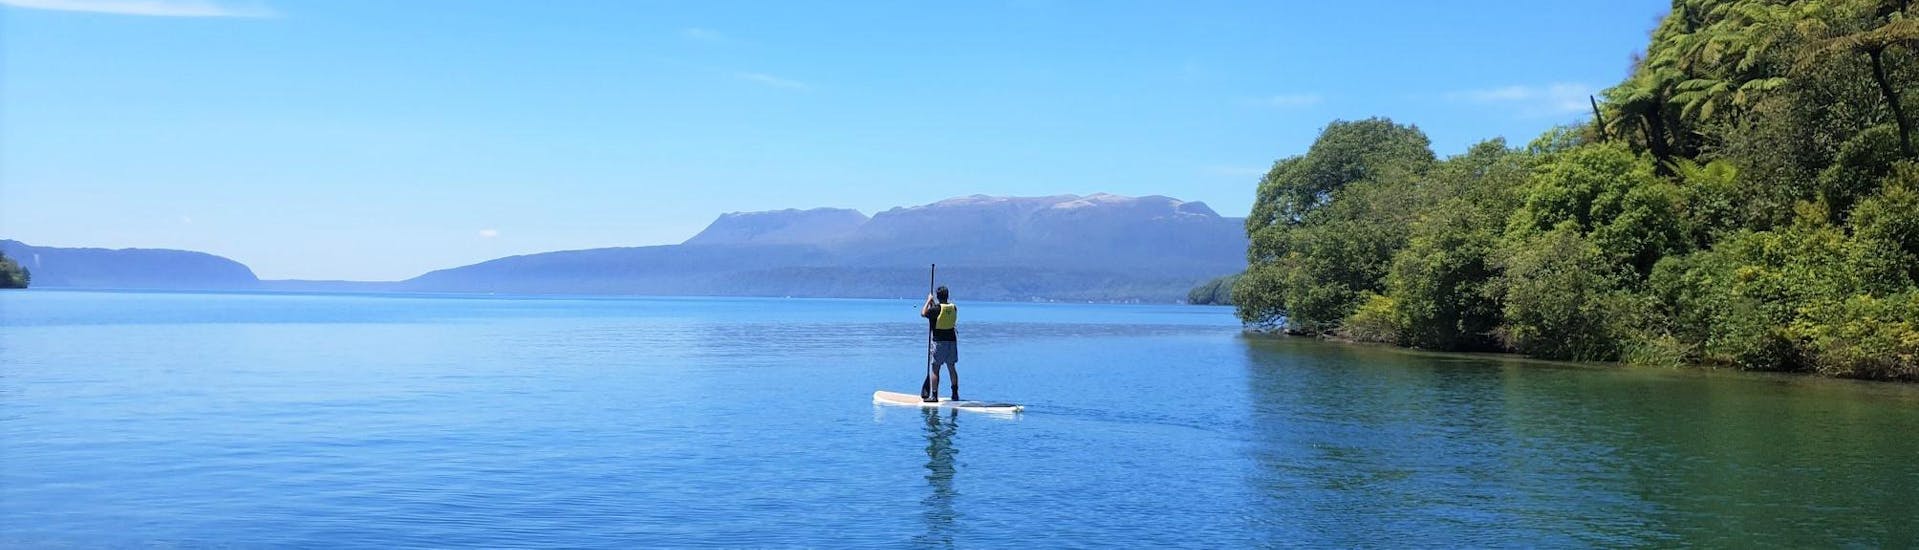 Leichte Kayak & Kanu-Tour - Lake Tikitapu.